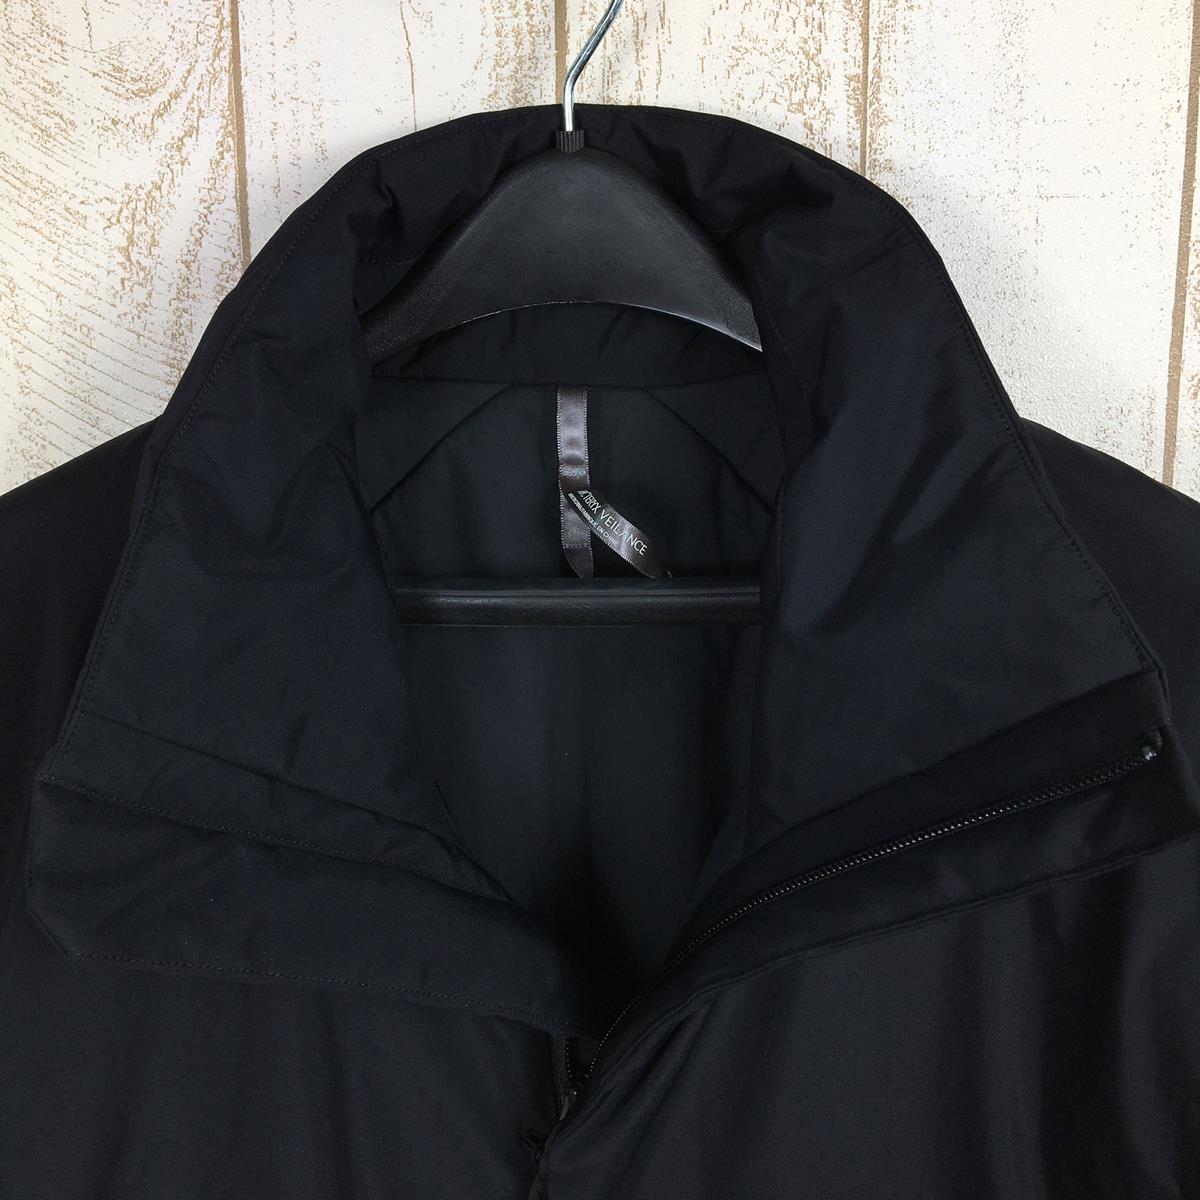 【MEN's S】 アークテリクス ヴェイランス ユーラー インサレーテッド ジャケット Euler Insulated Jacket コアロフトインサレーション ゴアテックスインフィニアム ARCTERYX VEILANCE X000007200 002291 Black ブラック系